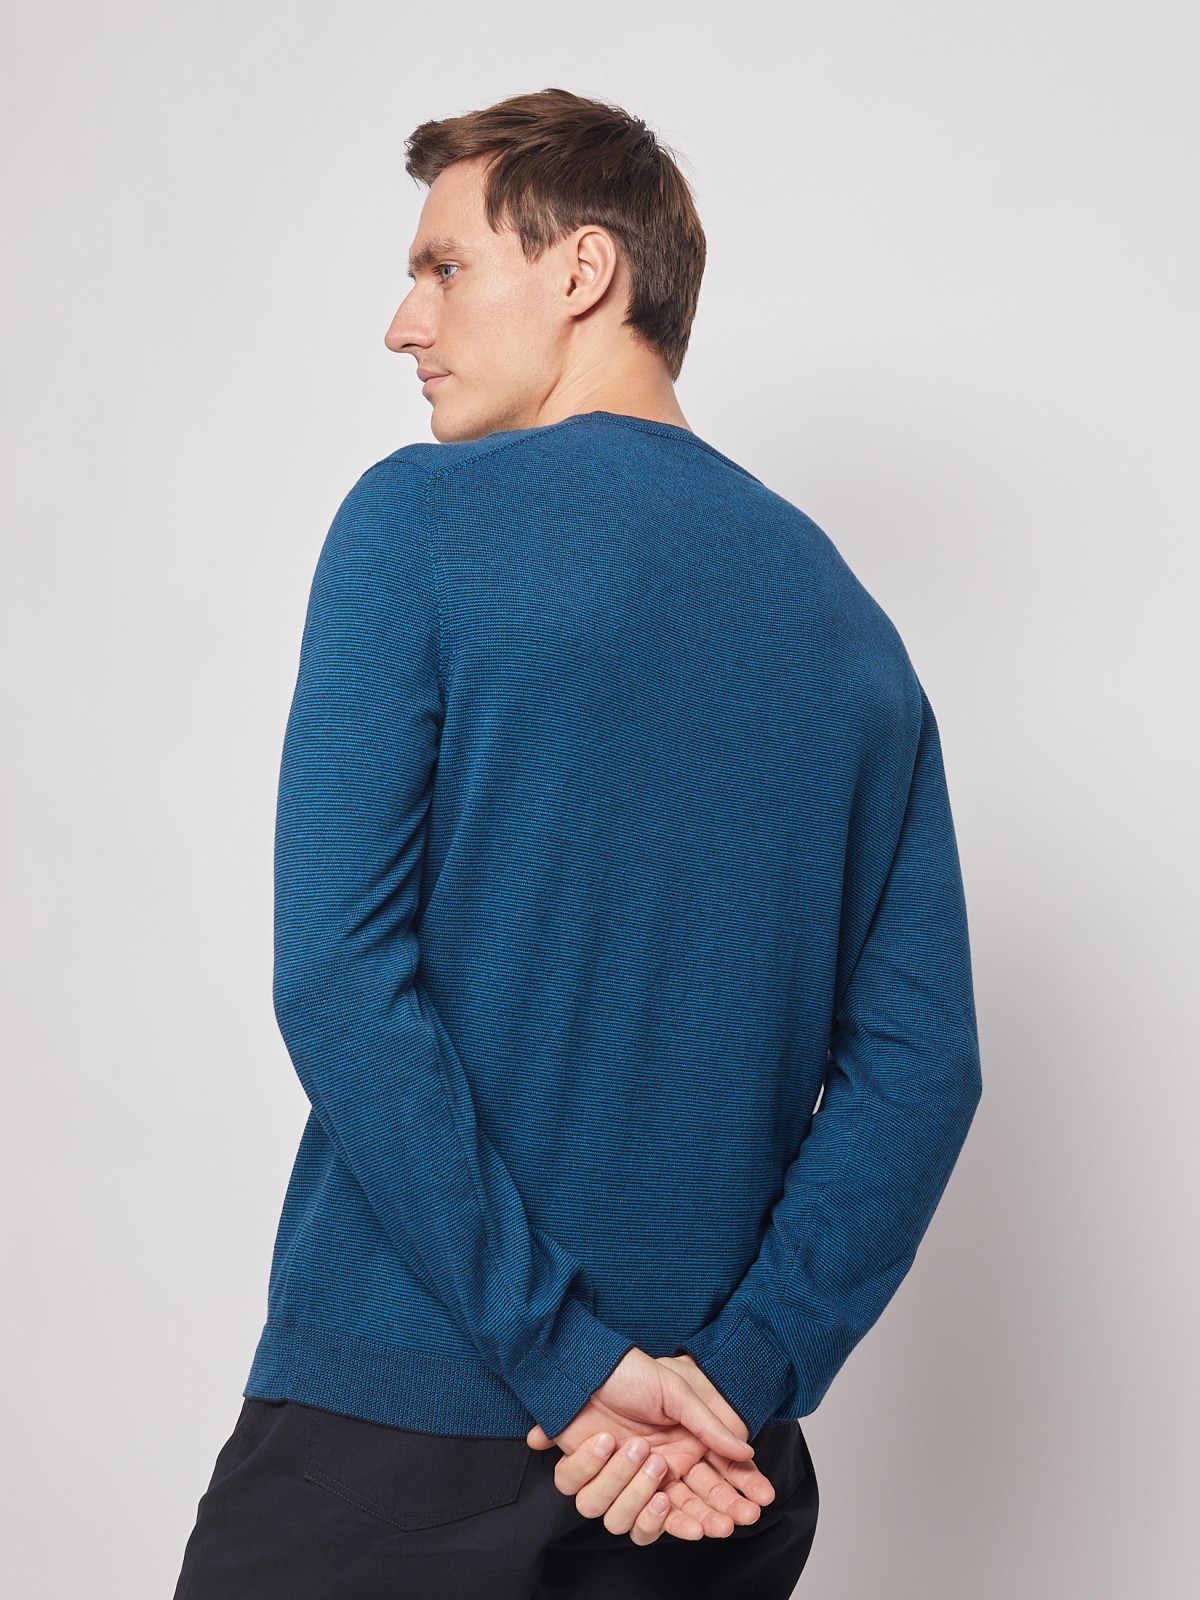 Пуловер с V-образным вырезом zolla 012116163162, цвет темно-бирюзовый, размер M - фото 5